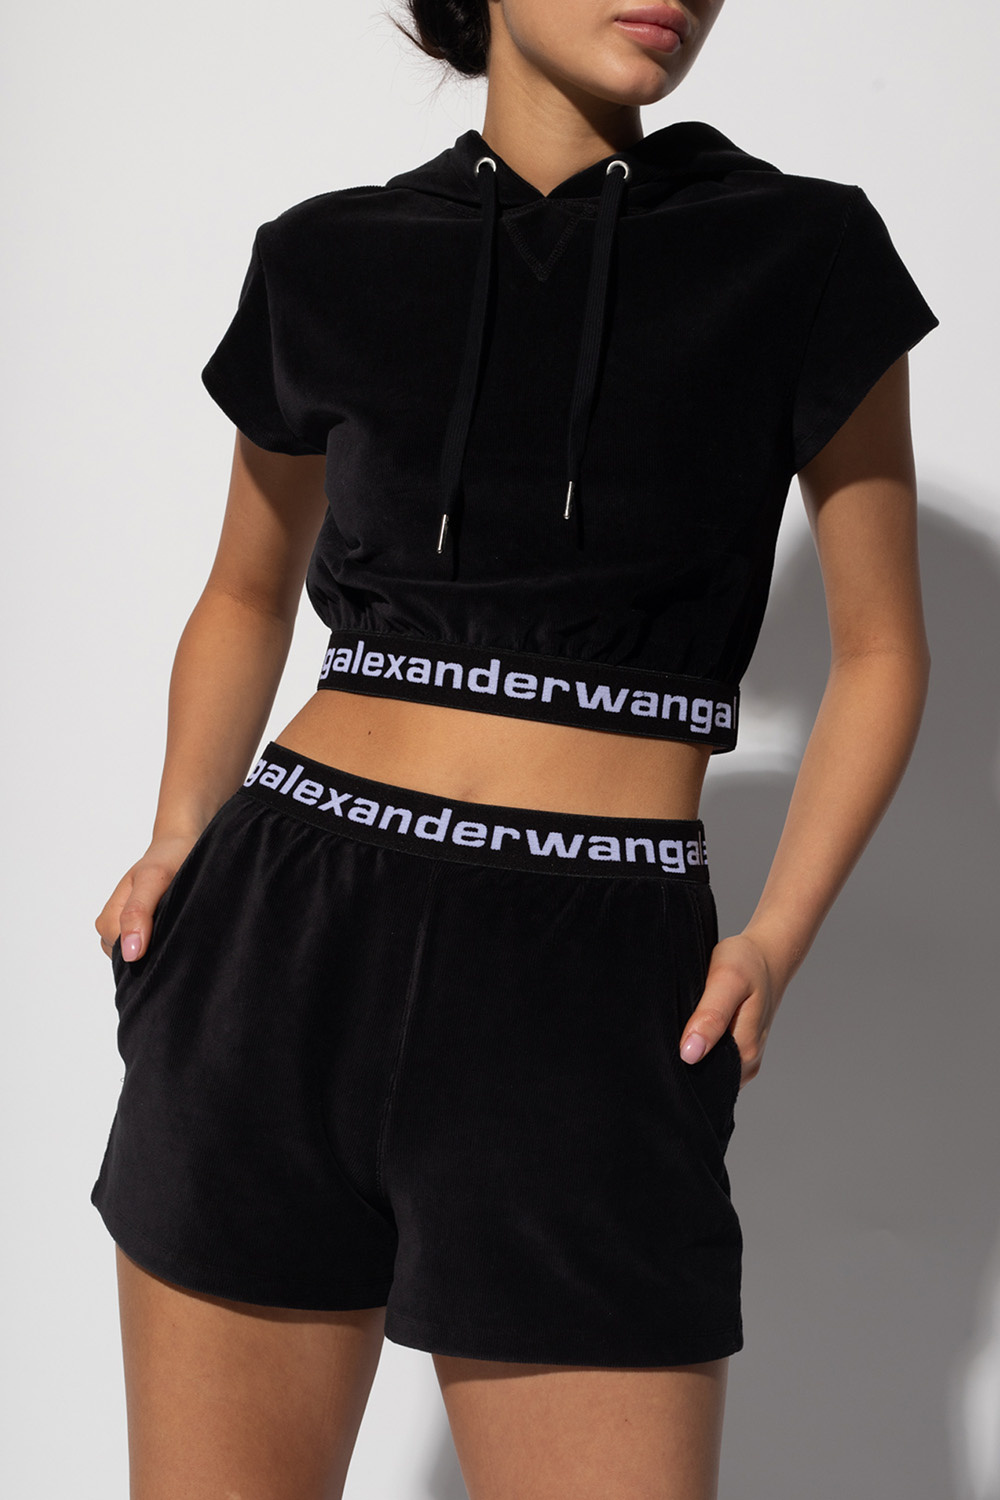 GenesinlifeShops Iceland - Cropped Noir hoodie T by Alexander Wang -  ornate-print long sleeved shirt